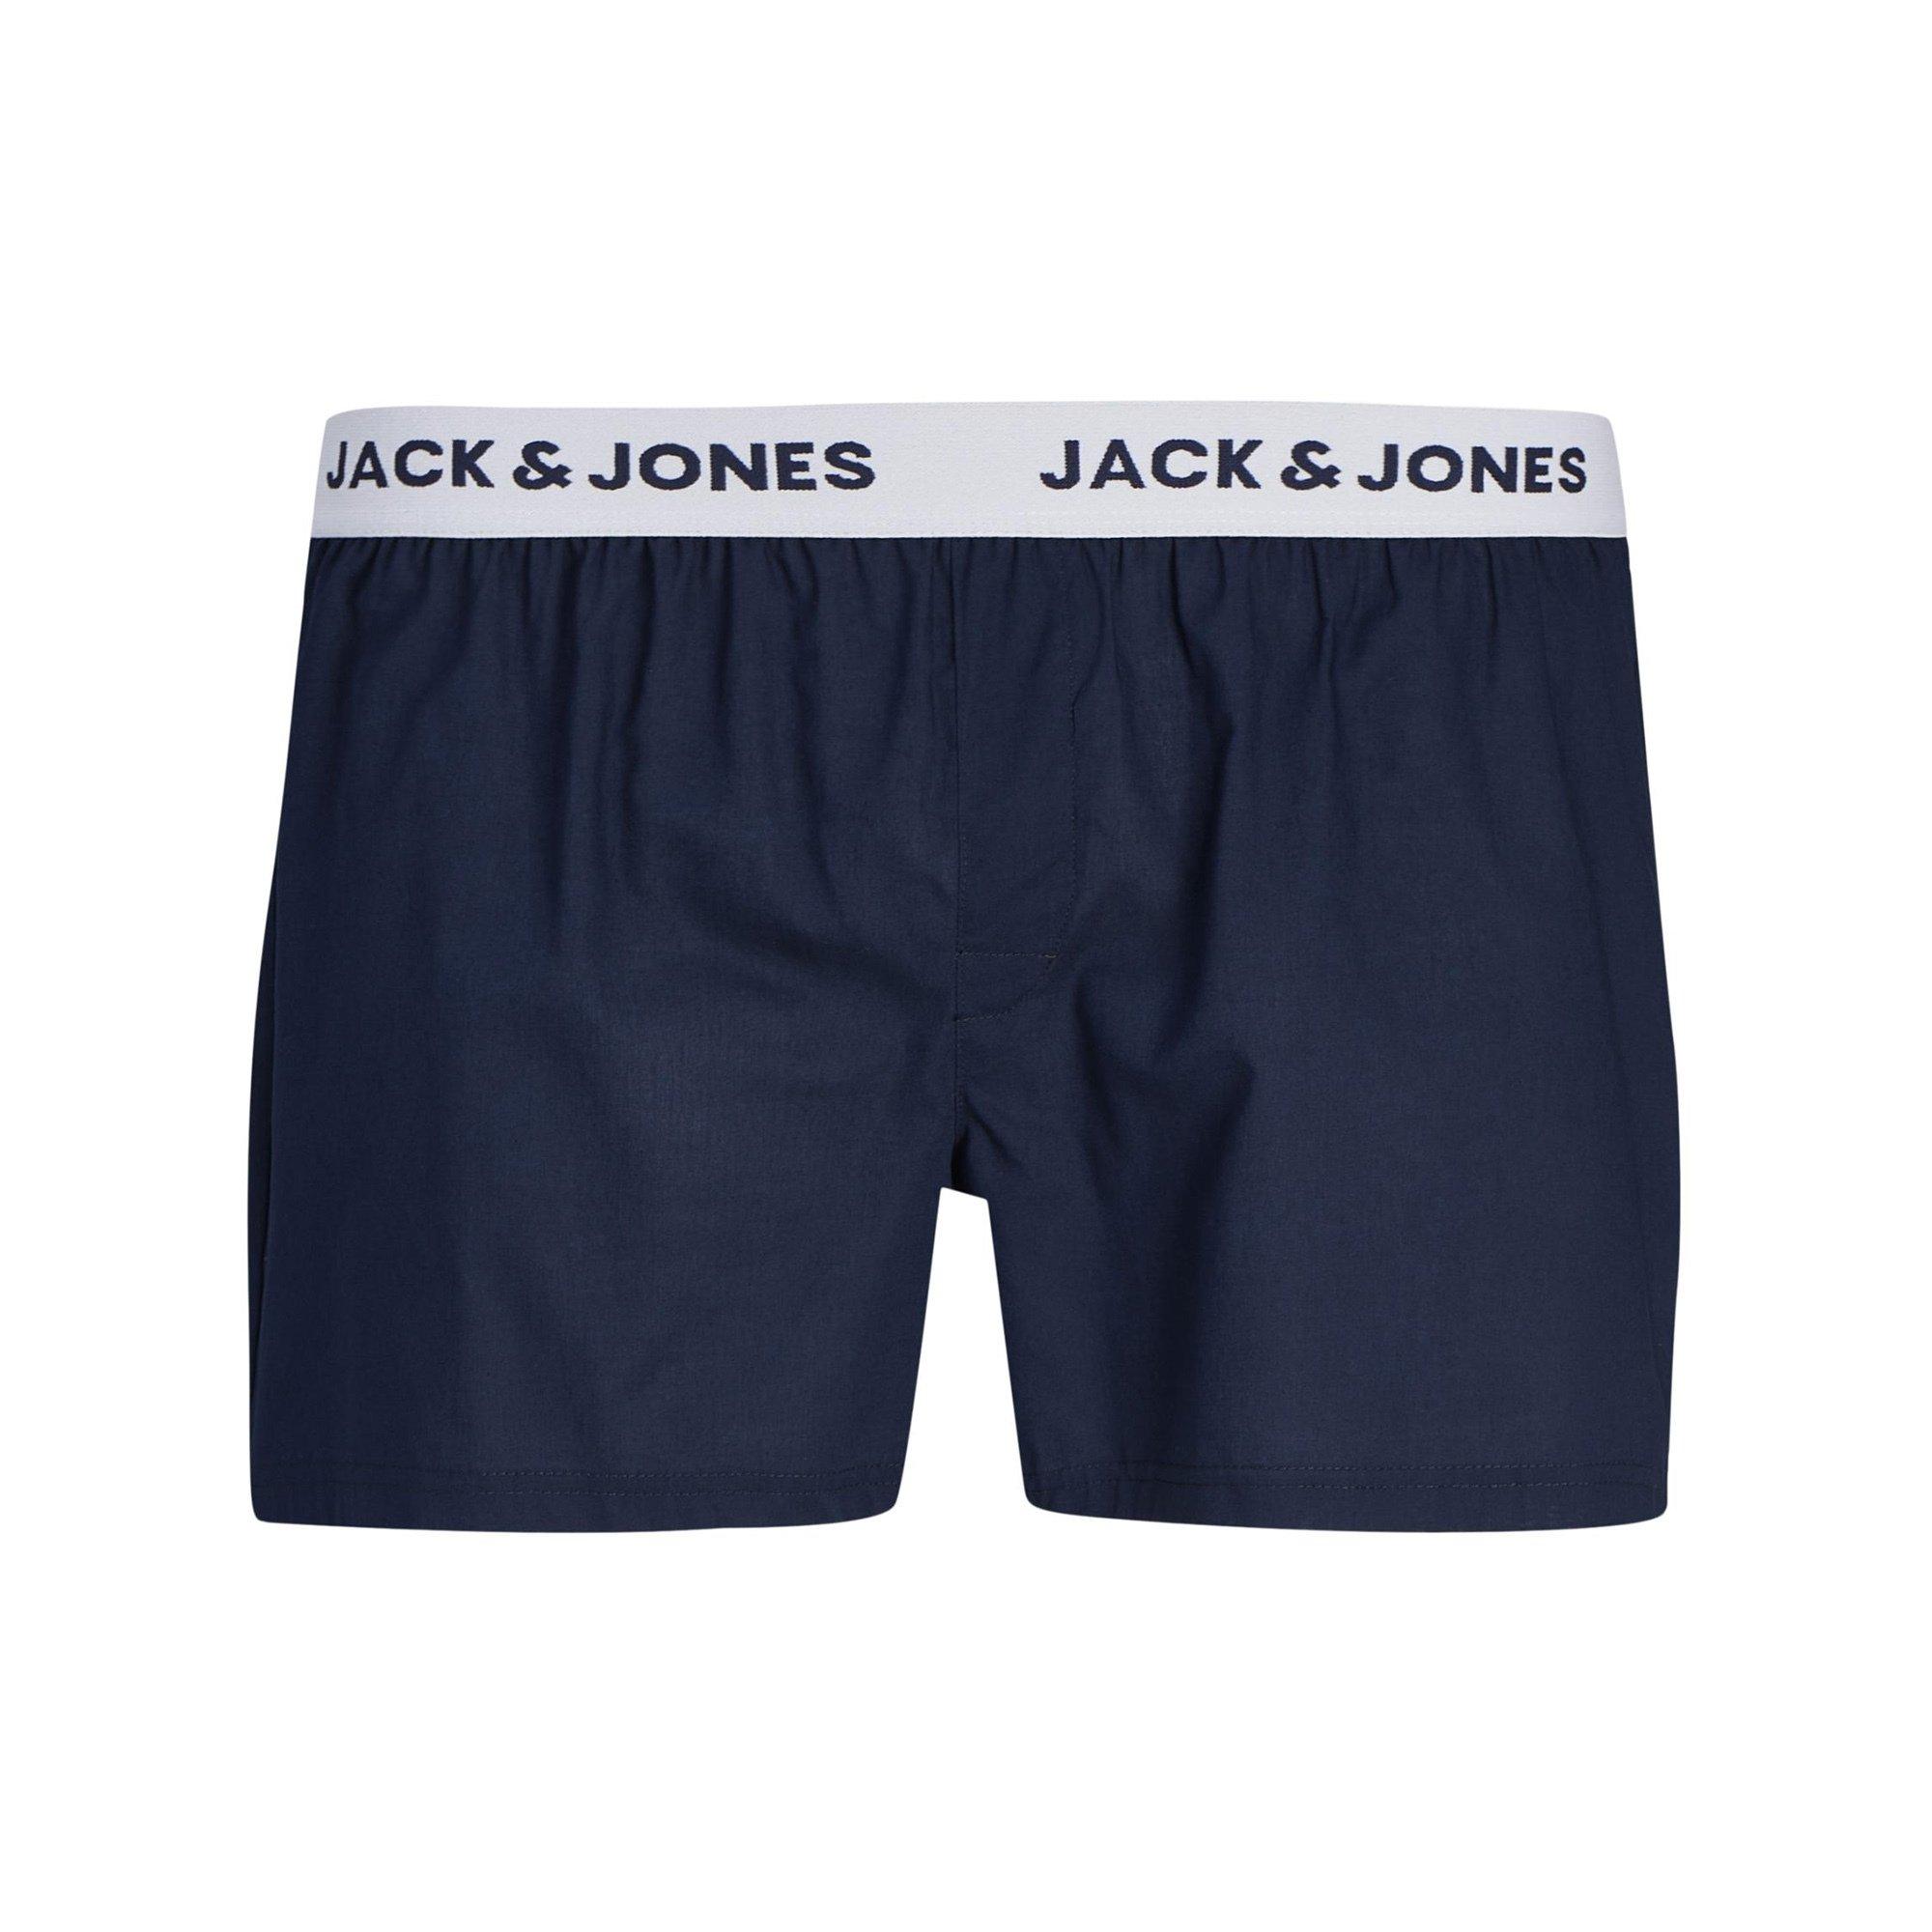 JACK & JONES JACDYLAN WOVEN BOXERS 3P Triopack, Boxershorts 